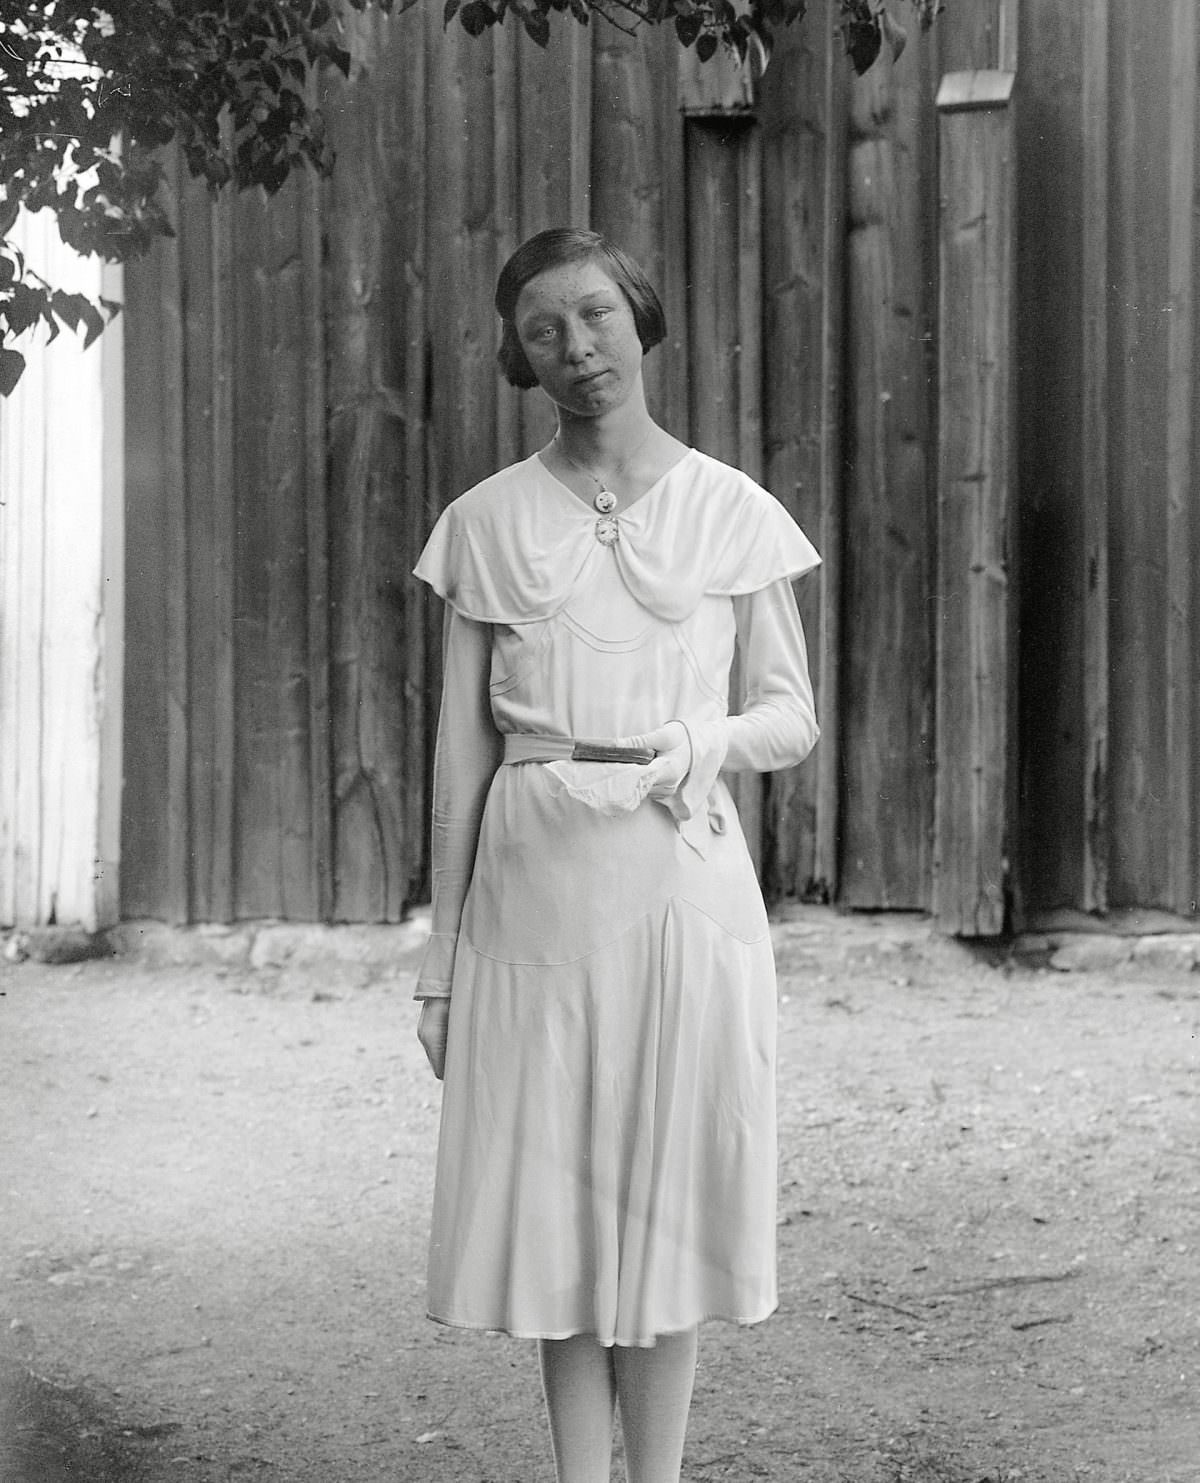 Siri Johanson in confirmation attire, Kotte, Altuna parish, 1931